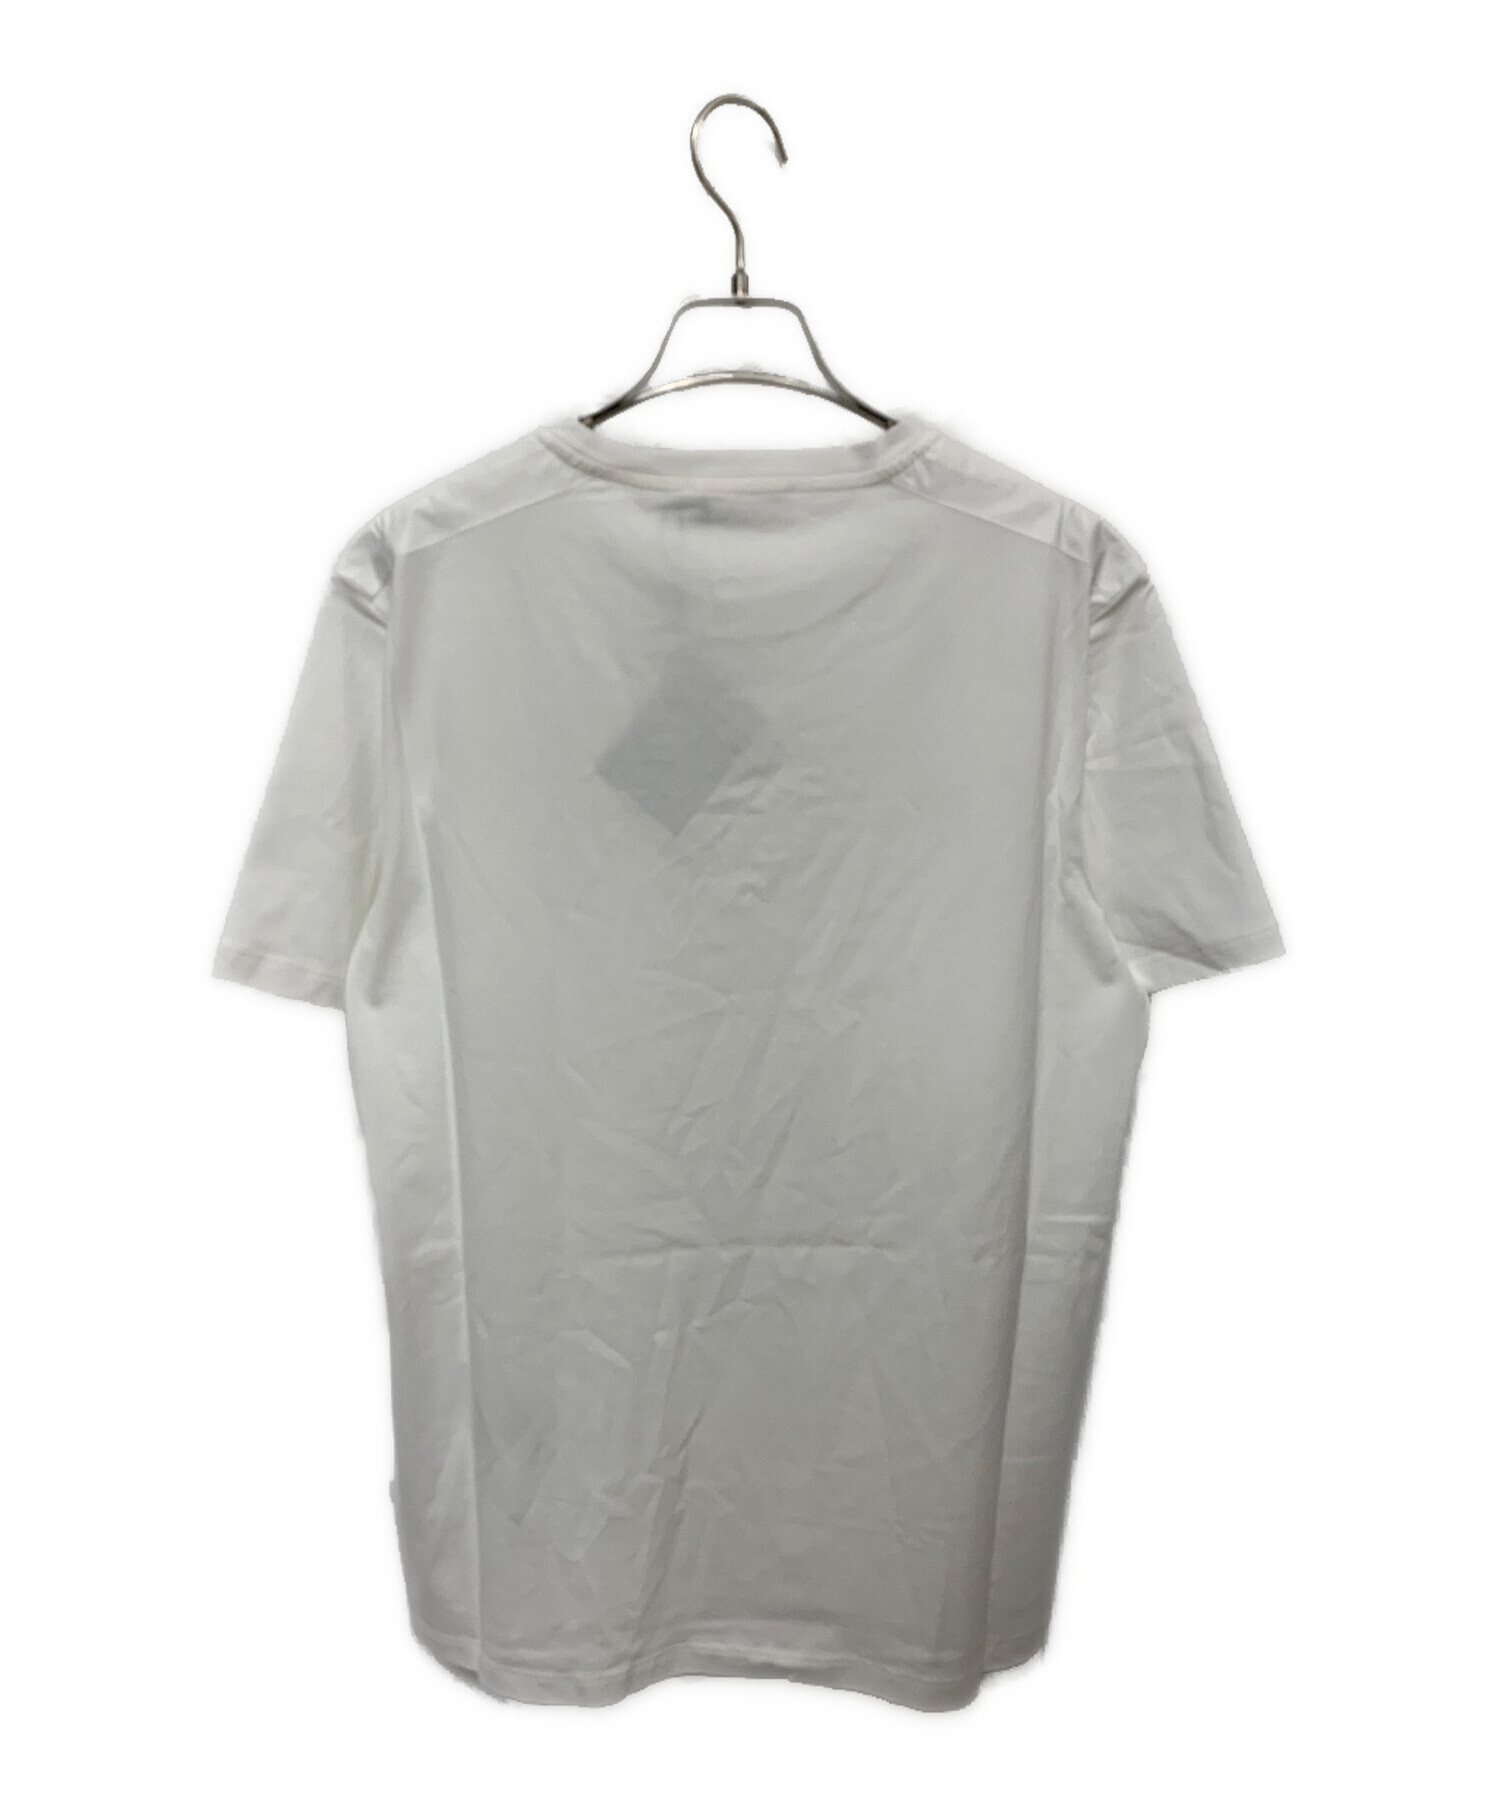 中古・古着通販】PRADA (プラダ) Tシャツ ホワイト サイズ:M 未使用品 